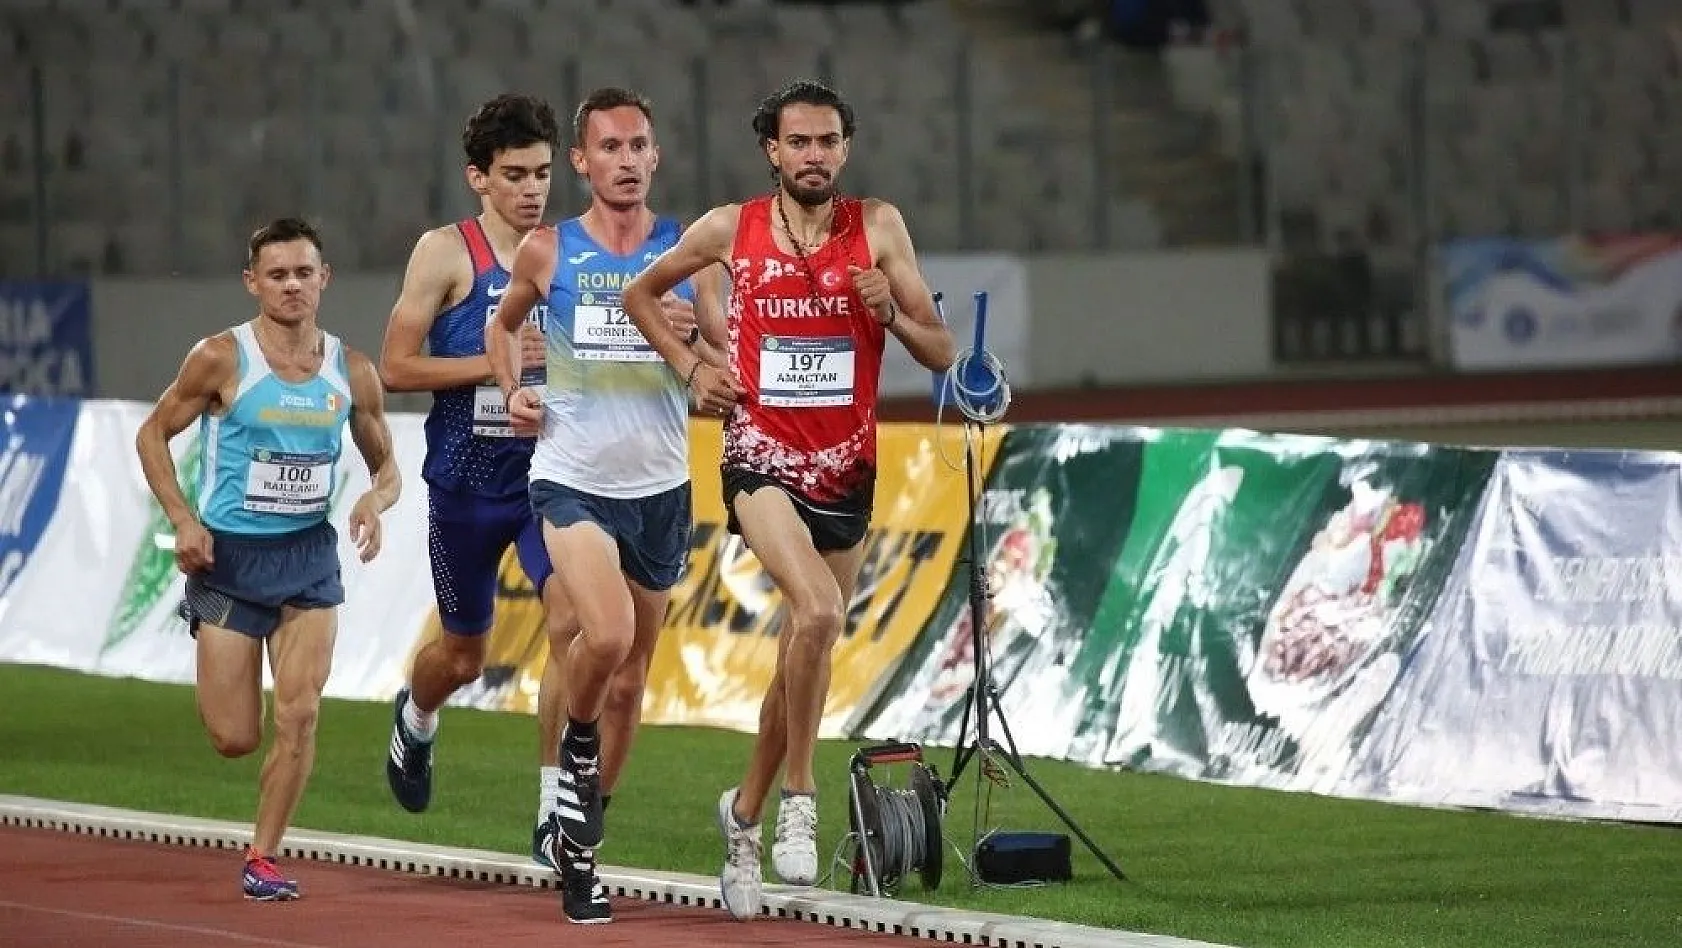 Kayserili atletler Balkan Şampiyonası'nda 2 altın, 3 bronz madalya kazandı
